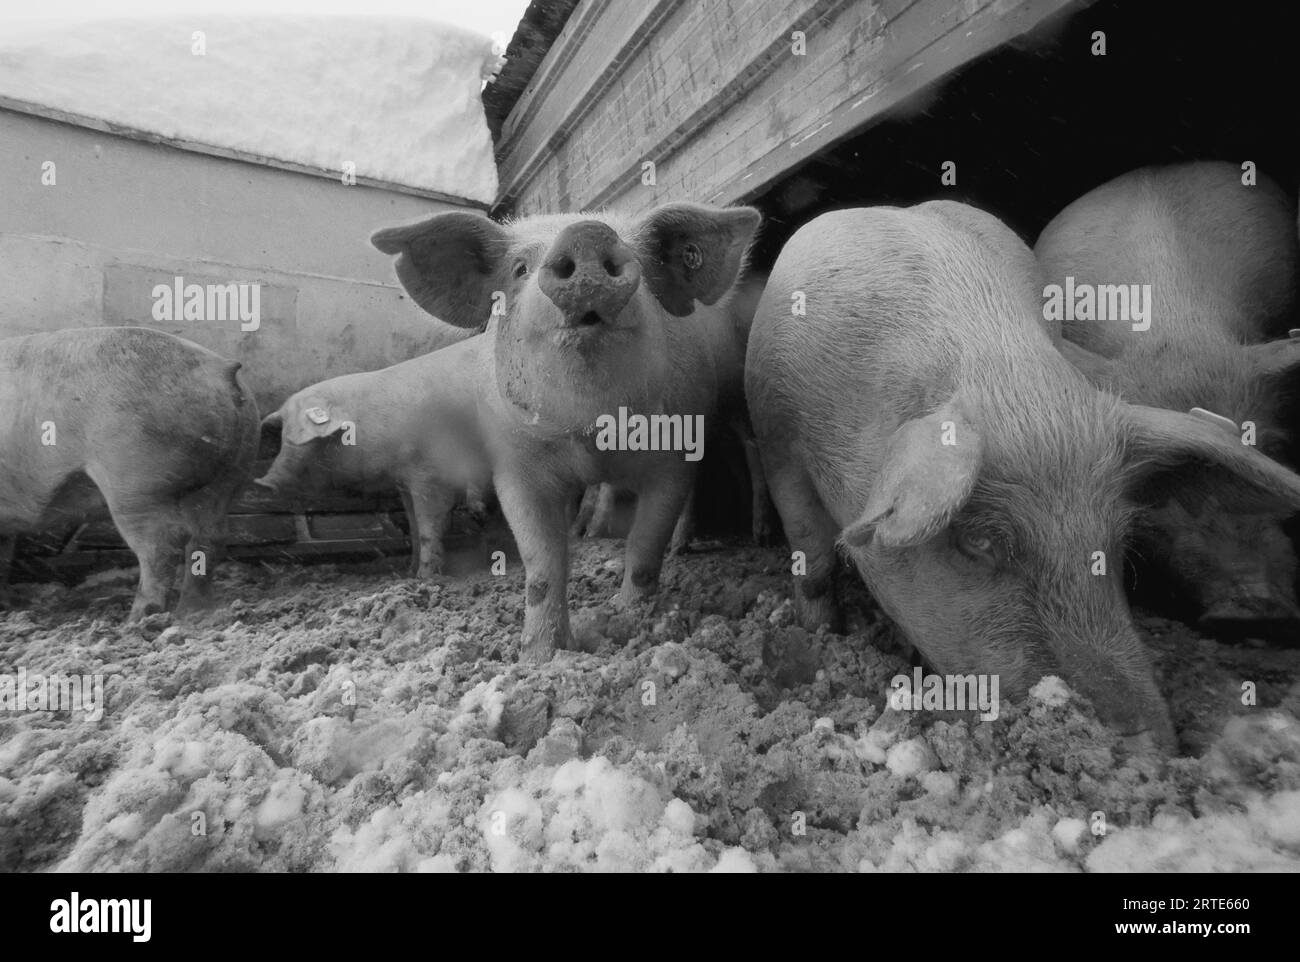 Les porcs enracinent dans la neige dans leur enclos ; Bennet, Nebraska, États-Unis d'Amérique Banque D'Images